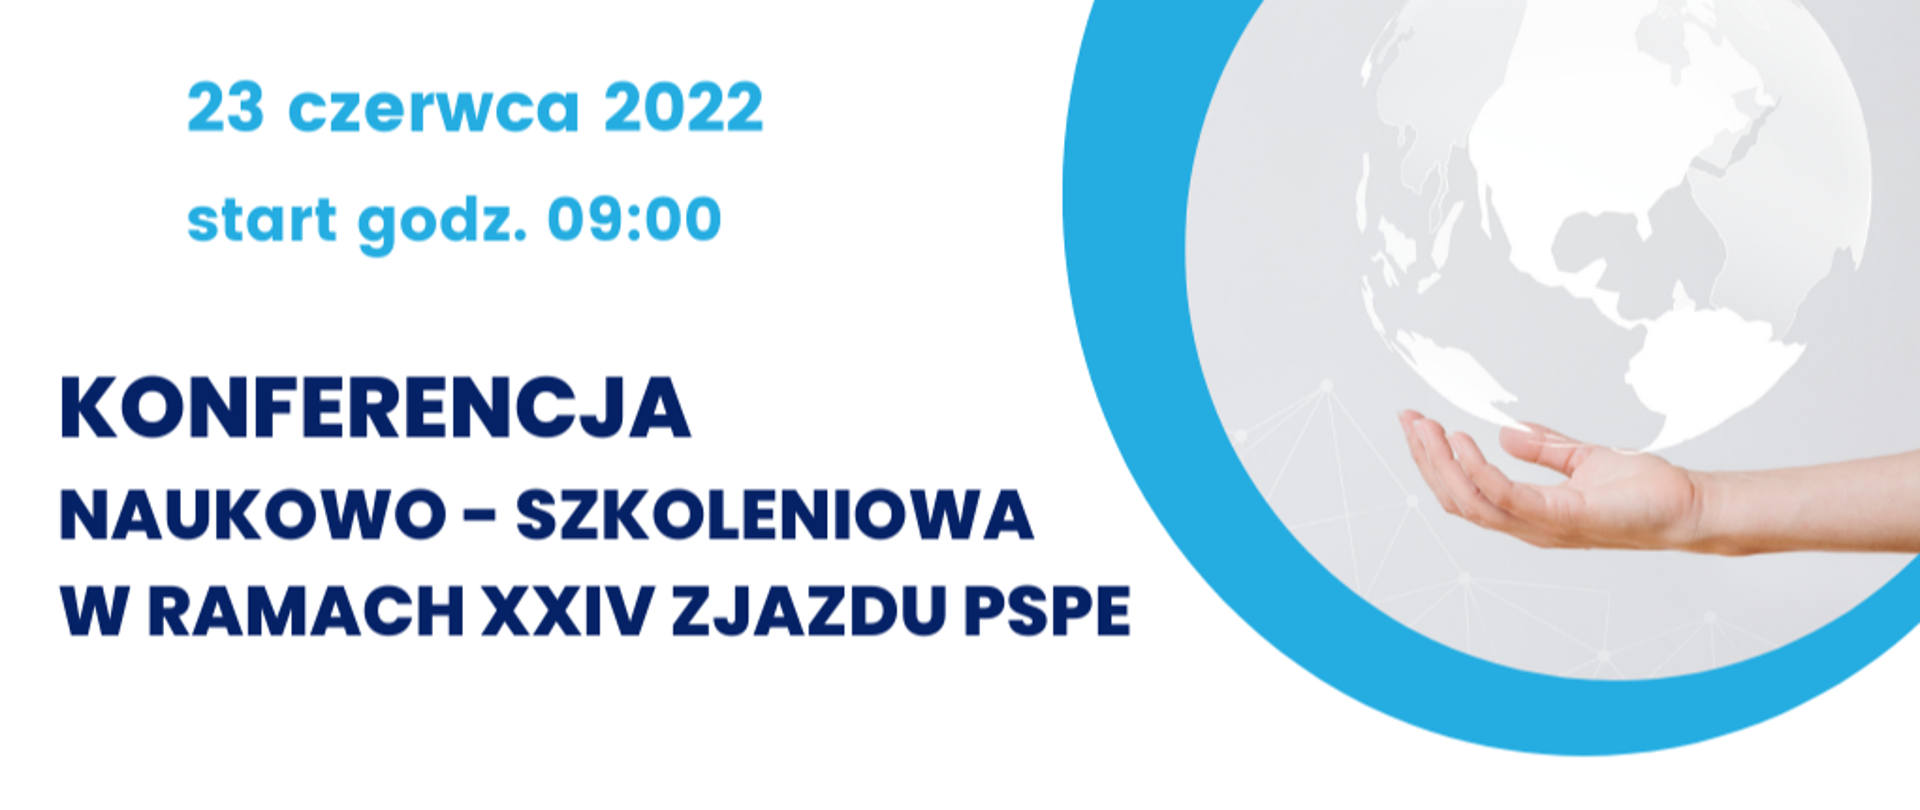 Konferencja Naukowo-Szkoleniowa w ramach XXIV zjazdu PSPE 23 czerwca 2022 start godz. 09:00